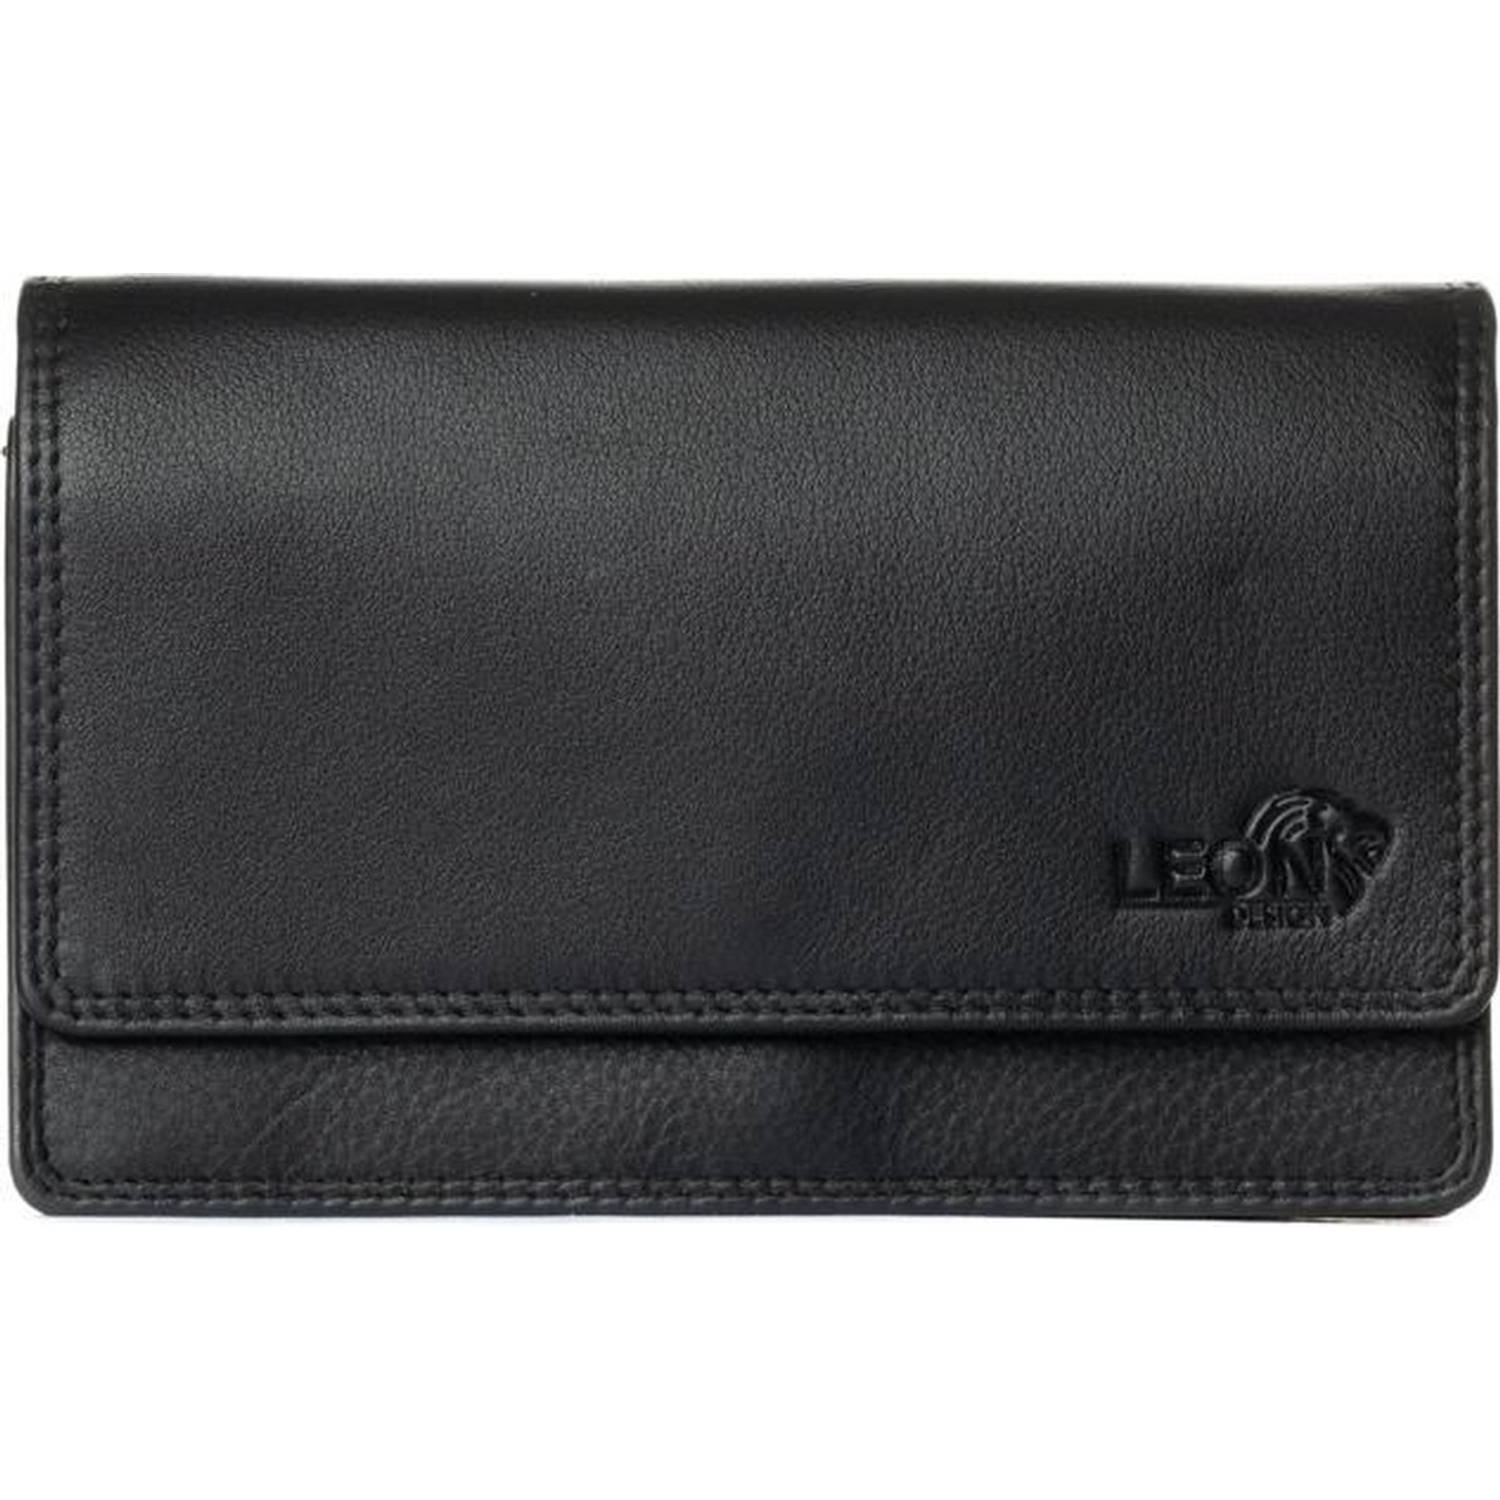 LeonDesign 16-W1285-04 dames portemonnee zwart leer